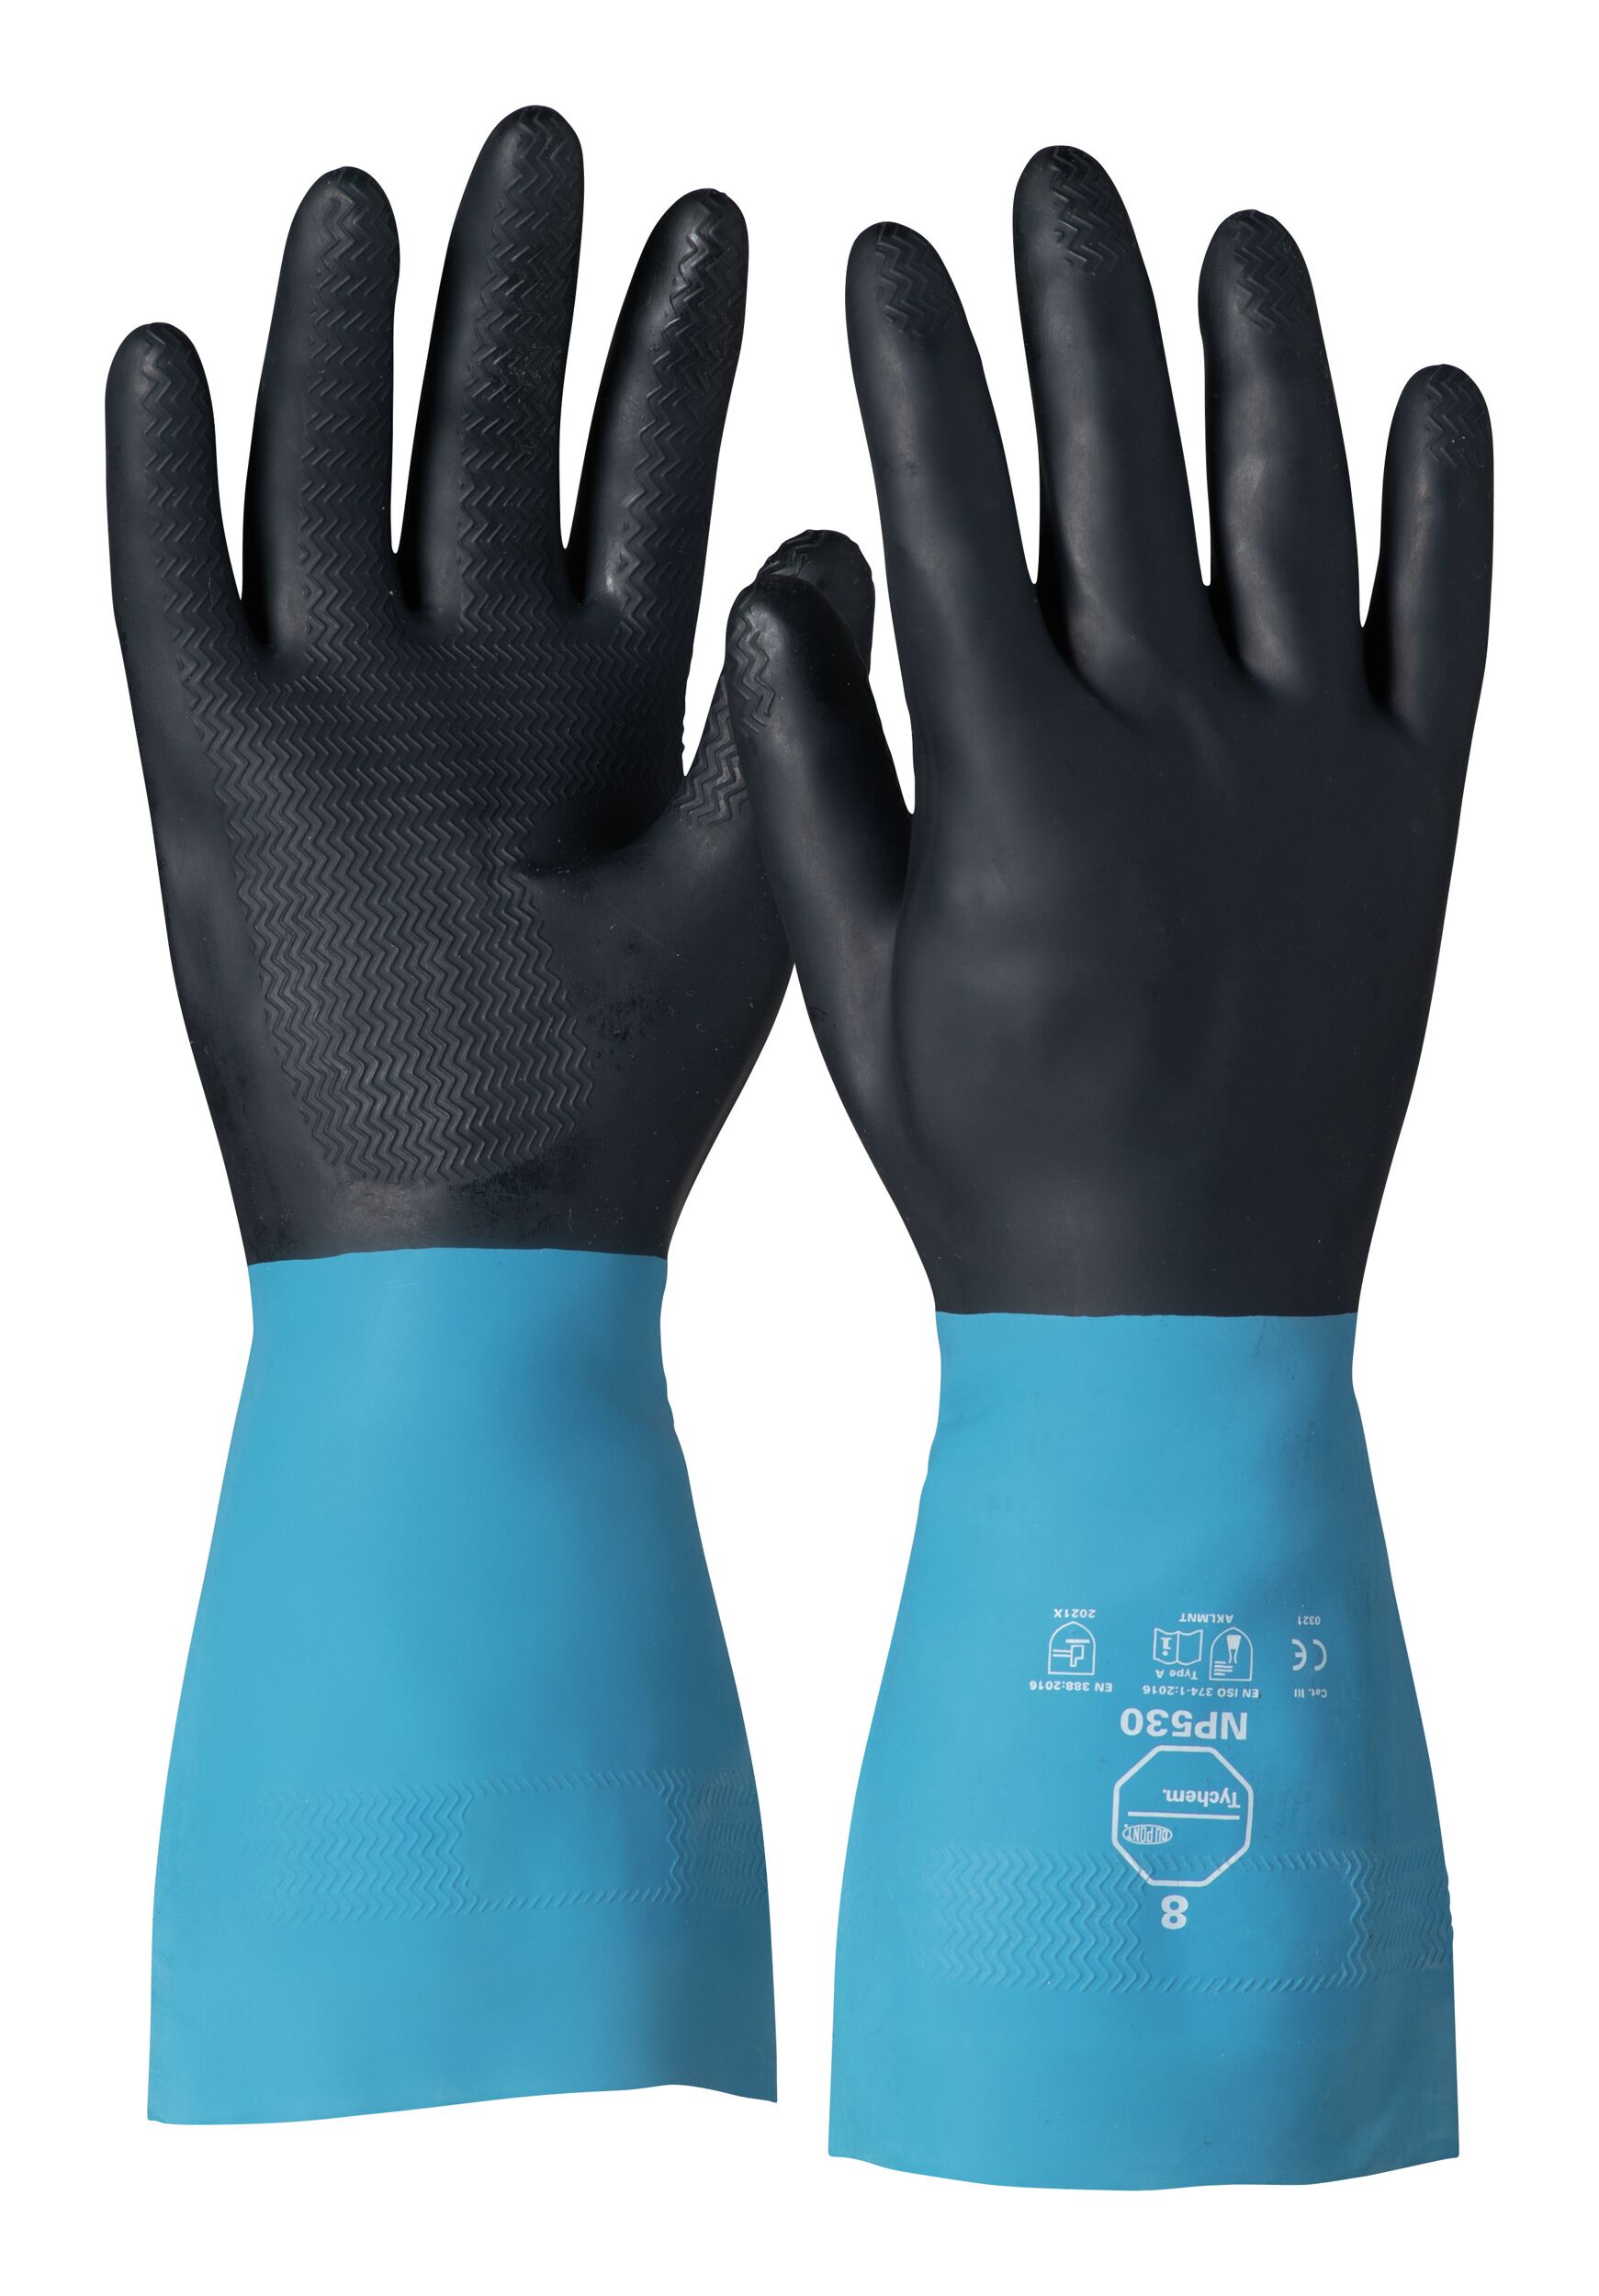 Dupont Handschuh Tychem Np 530 Neopren 305 Mm Grosse 7 Schutzhandschuhe Schutz Fur Die Hande Arbeitsschutz Werkstatt Banemo Rund Ums Haus